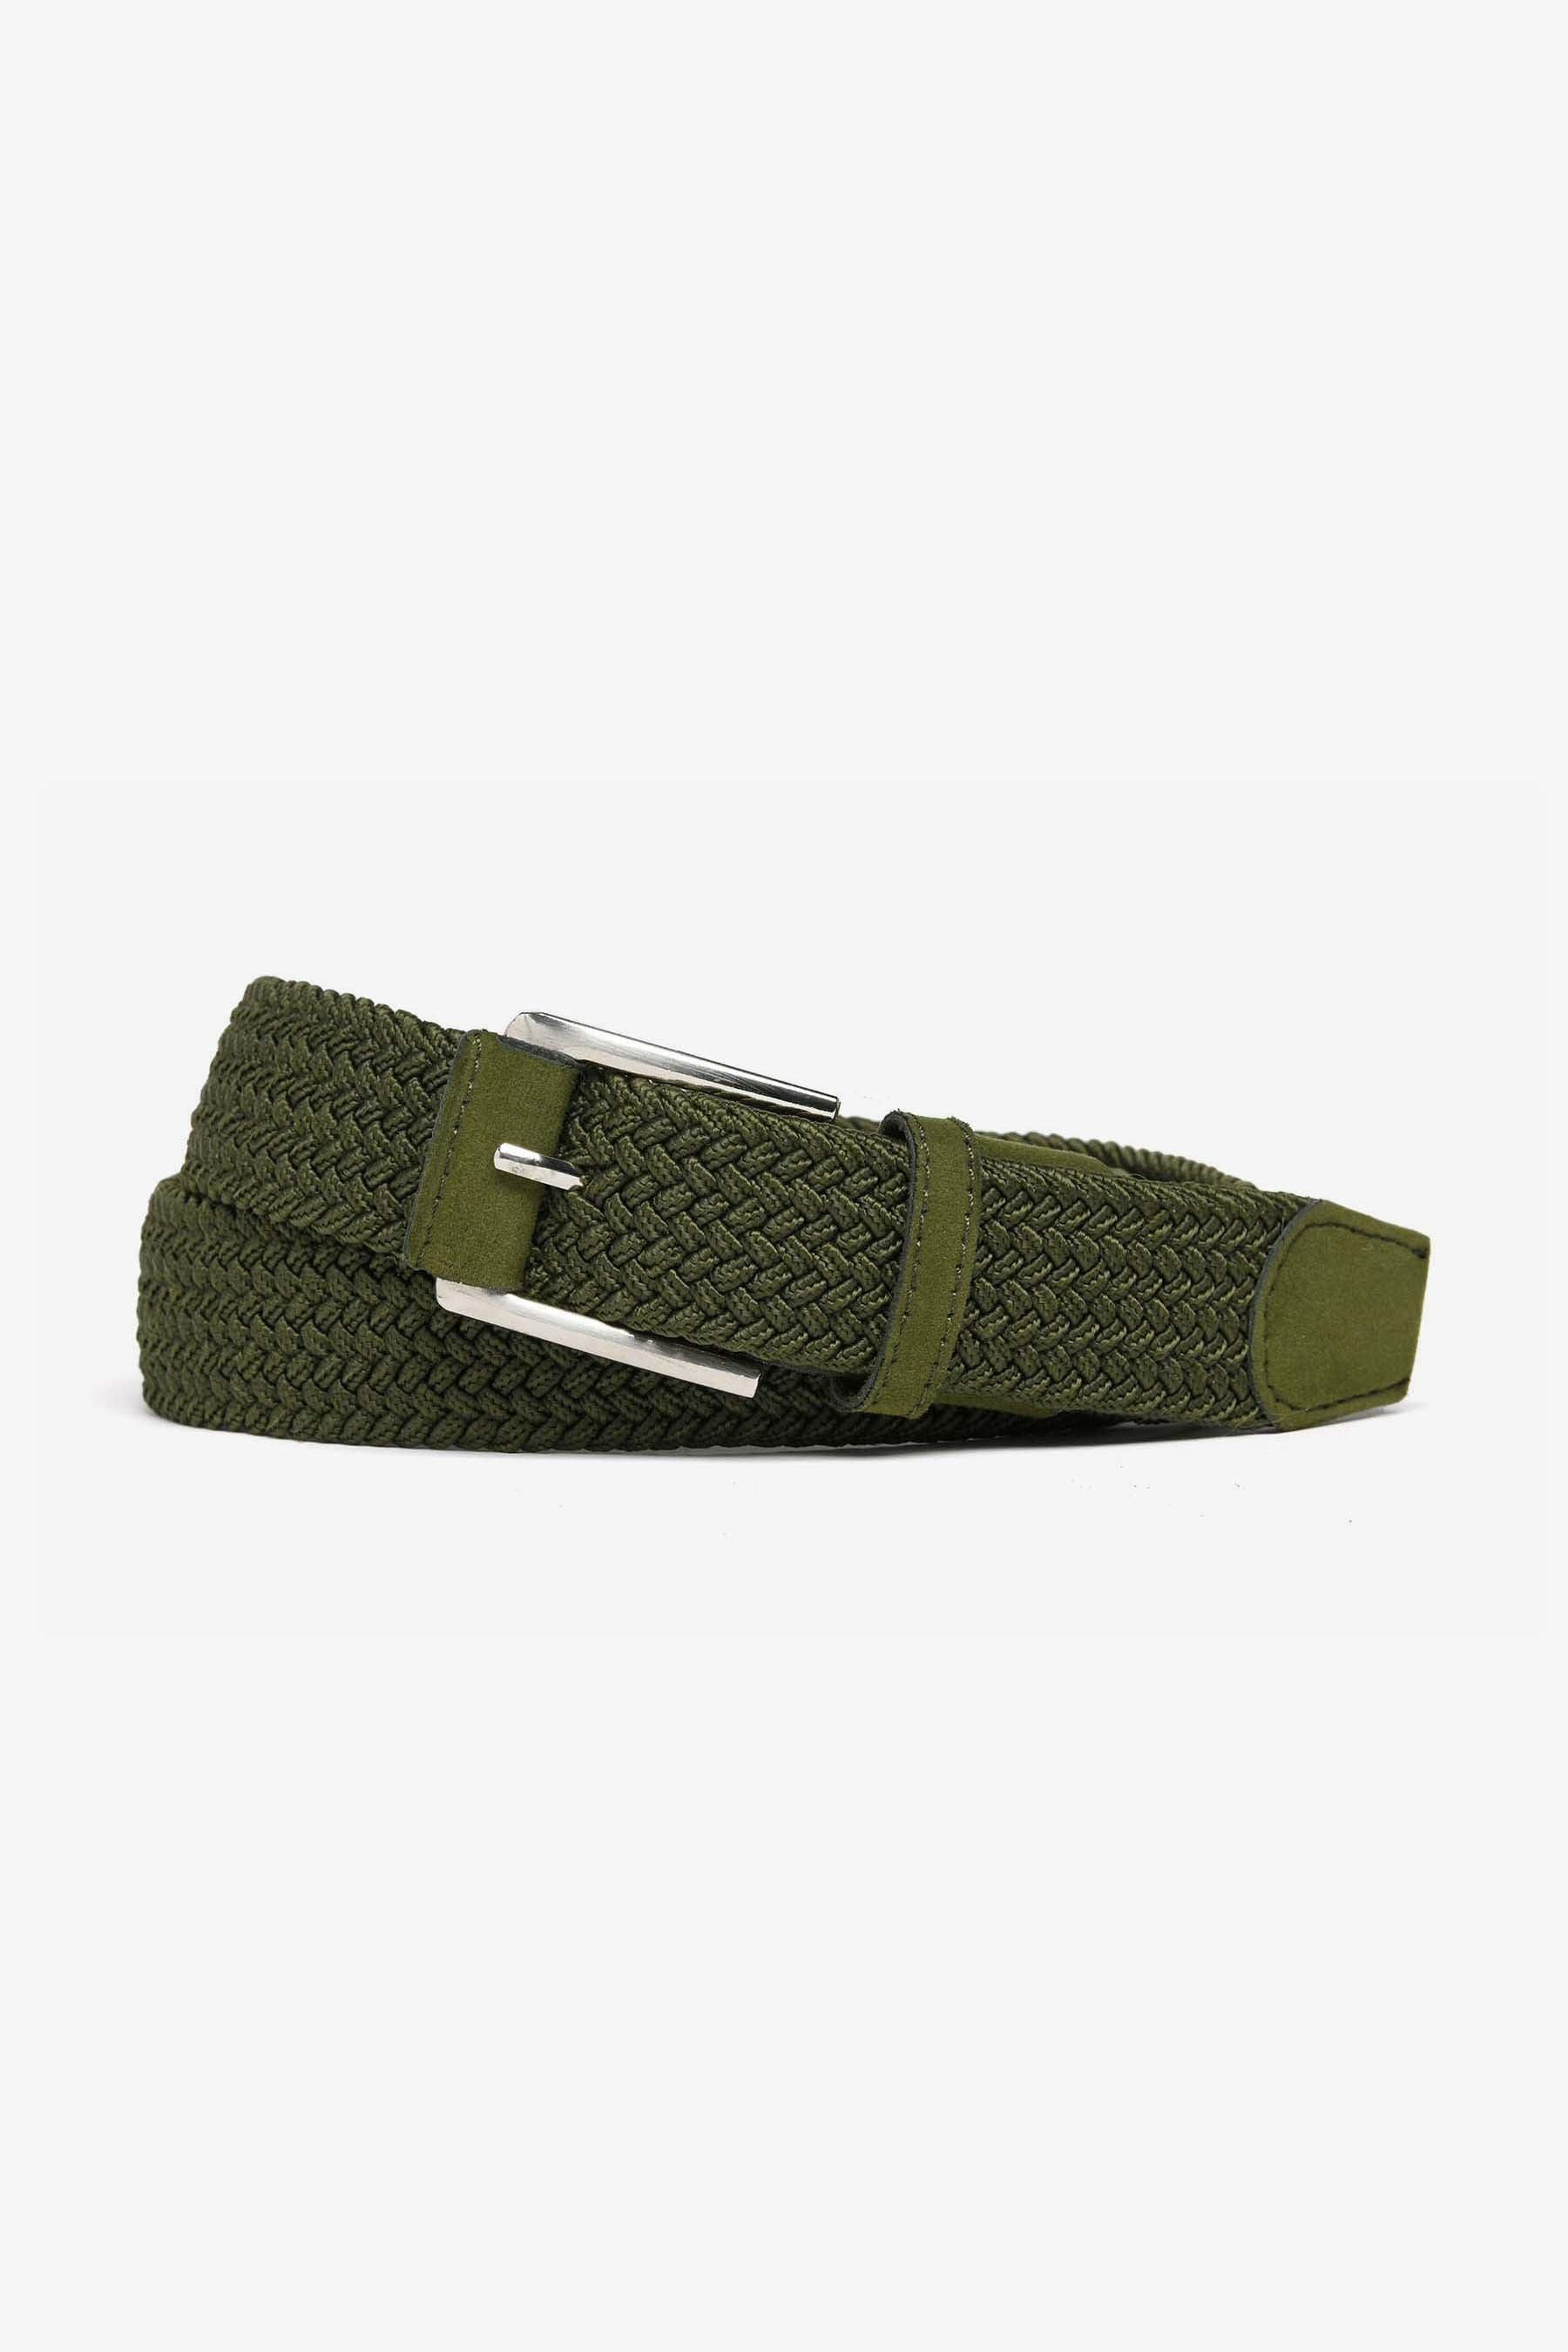 Cintura sportiva elastica intrecciata verde · Dan John